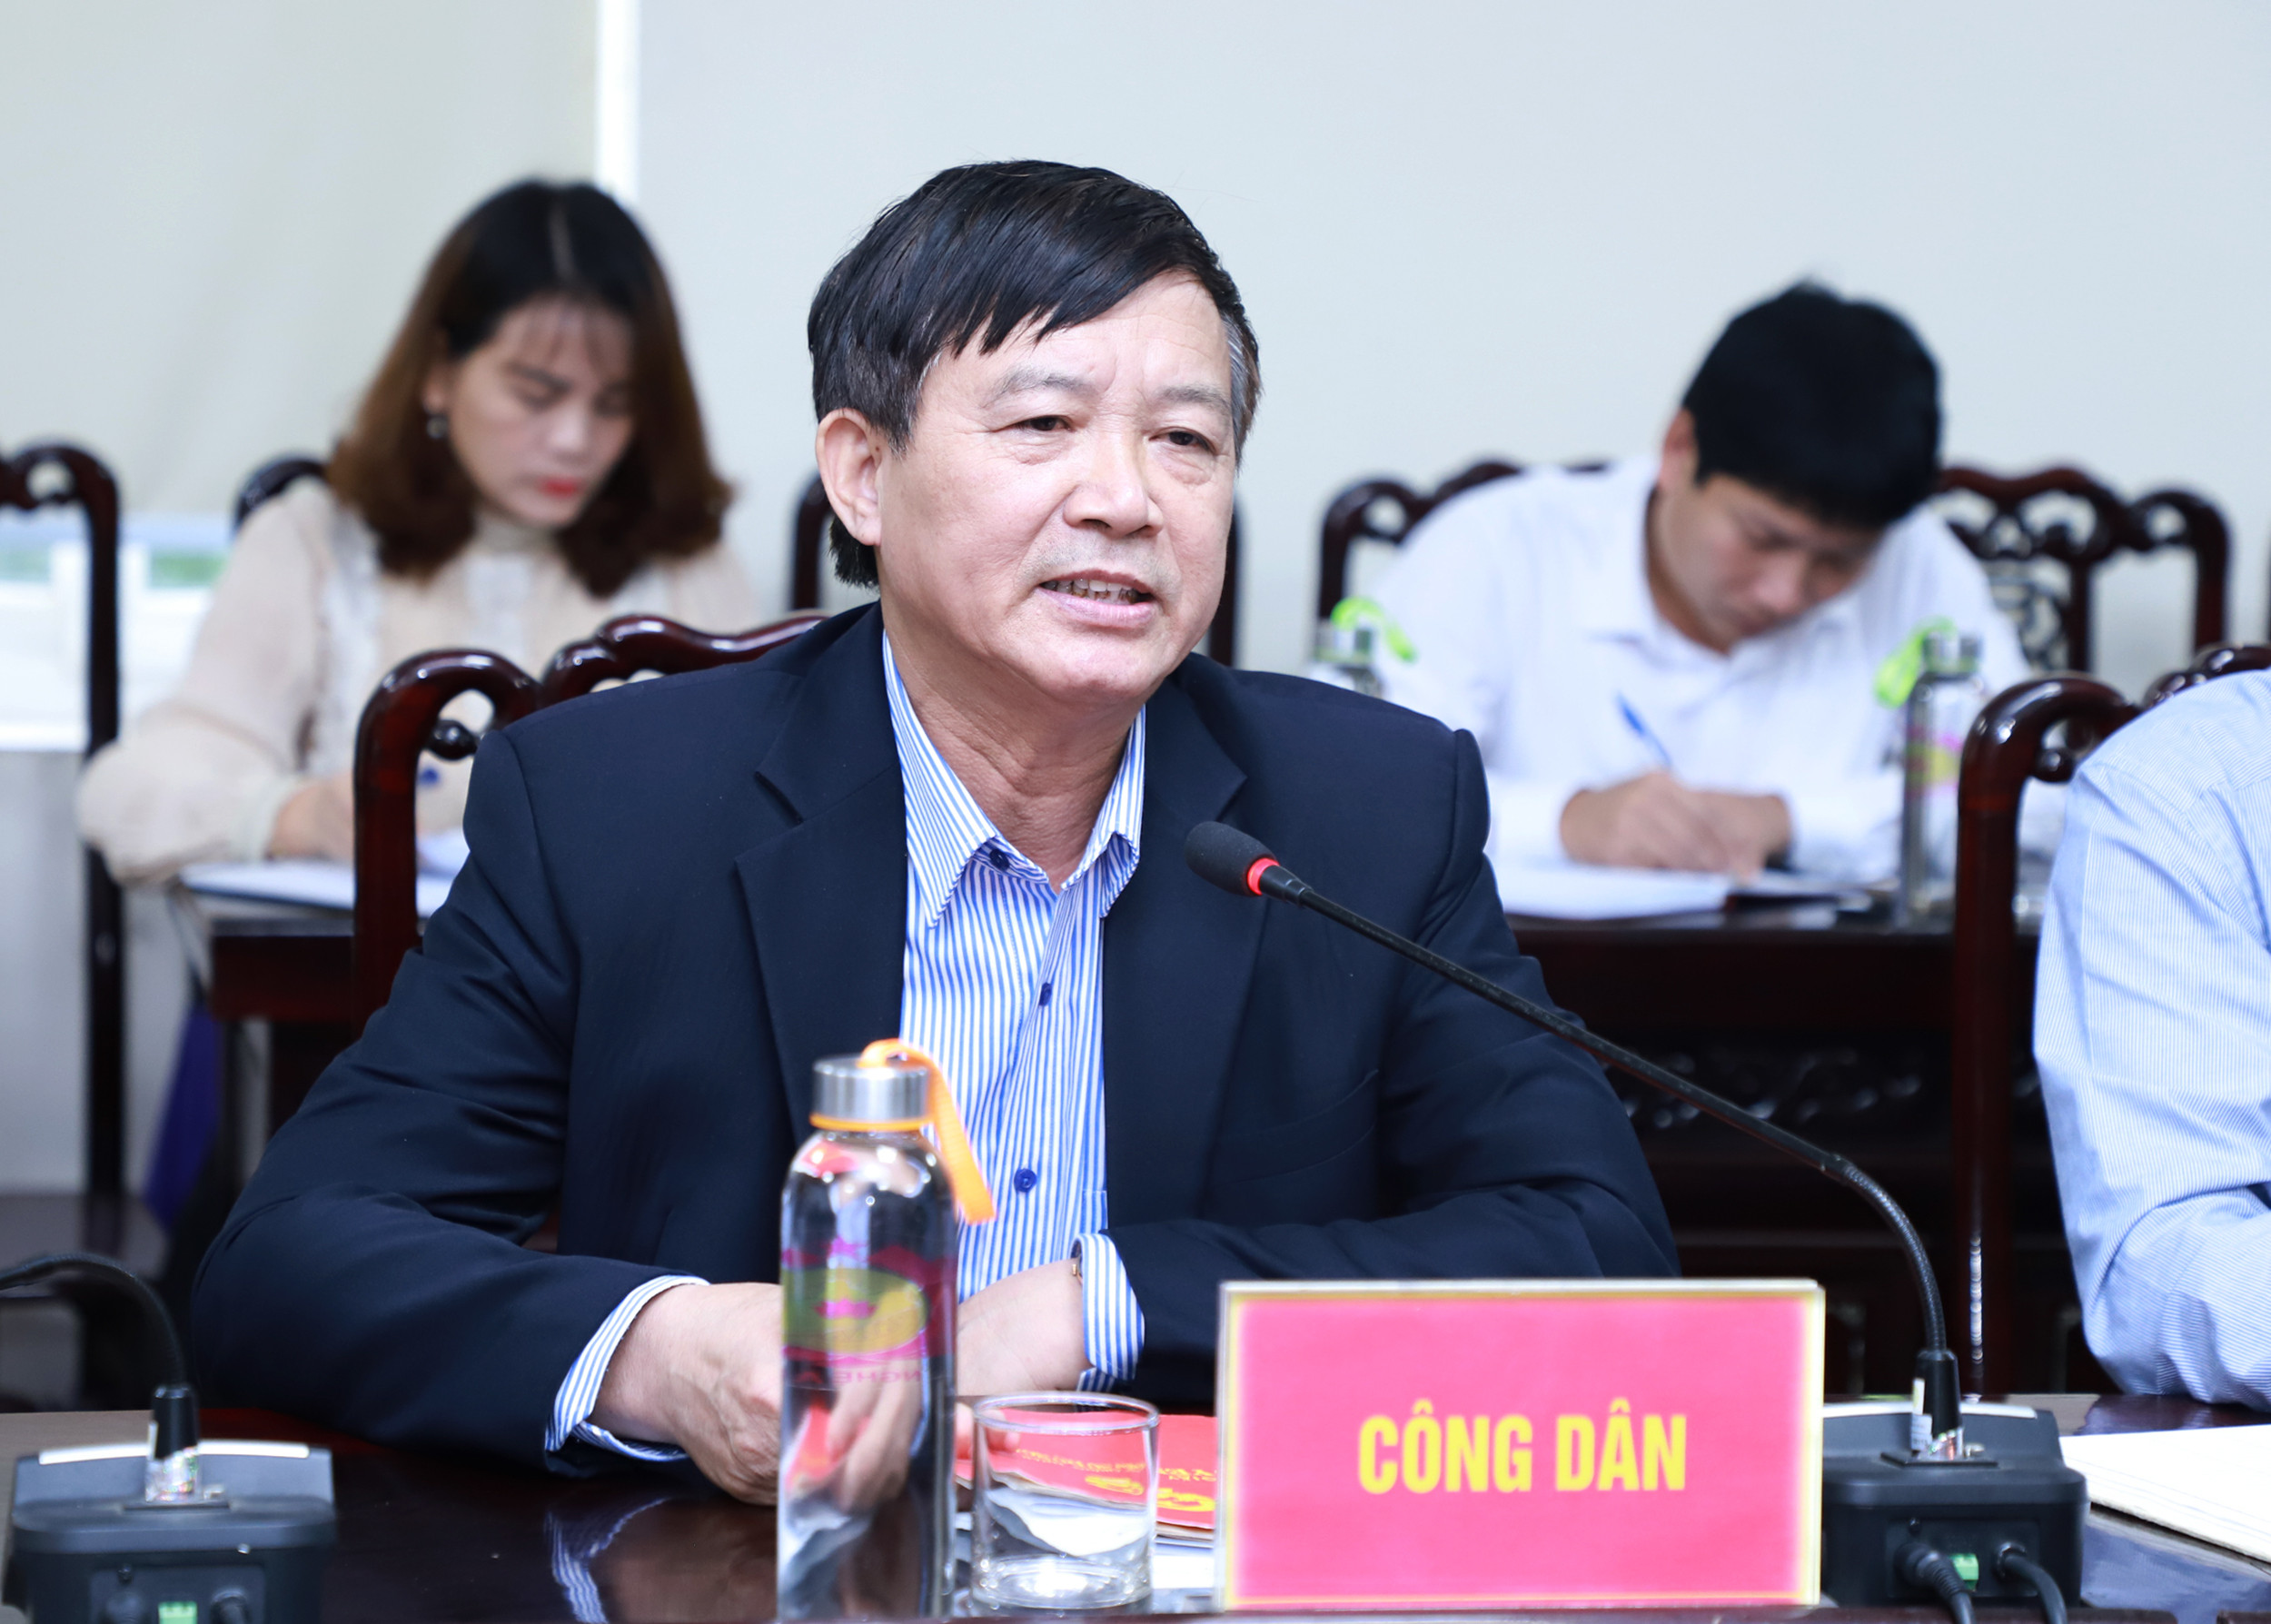 Công dân Nguyễn Văn Chương trình bày kiến nghị. Ảnh: Phạm Bằng